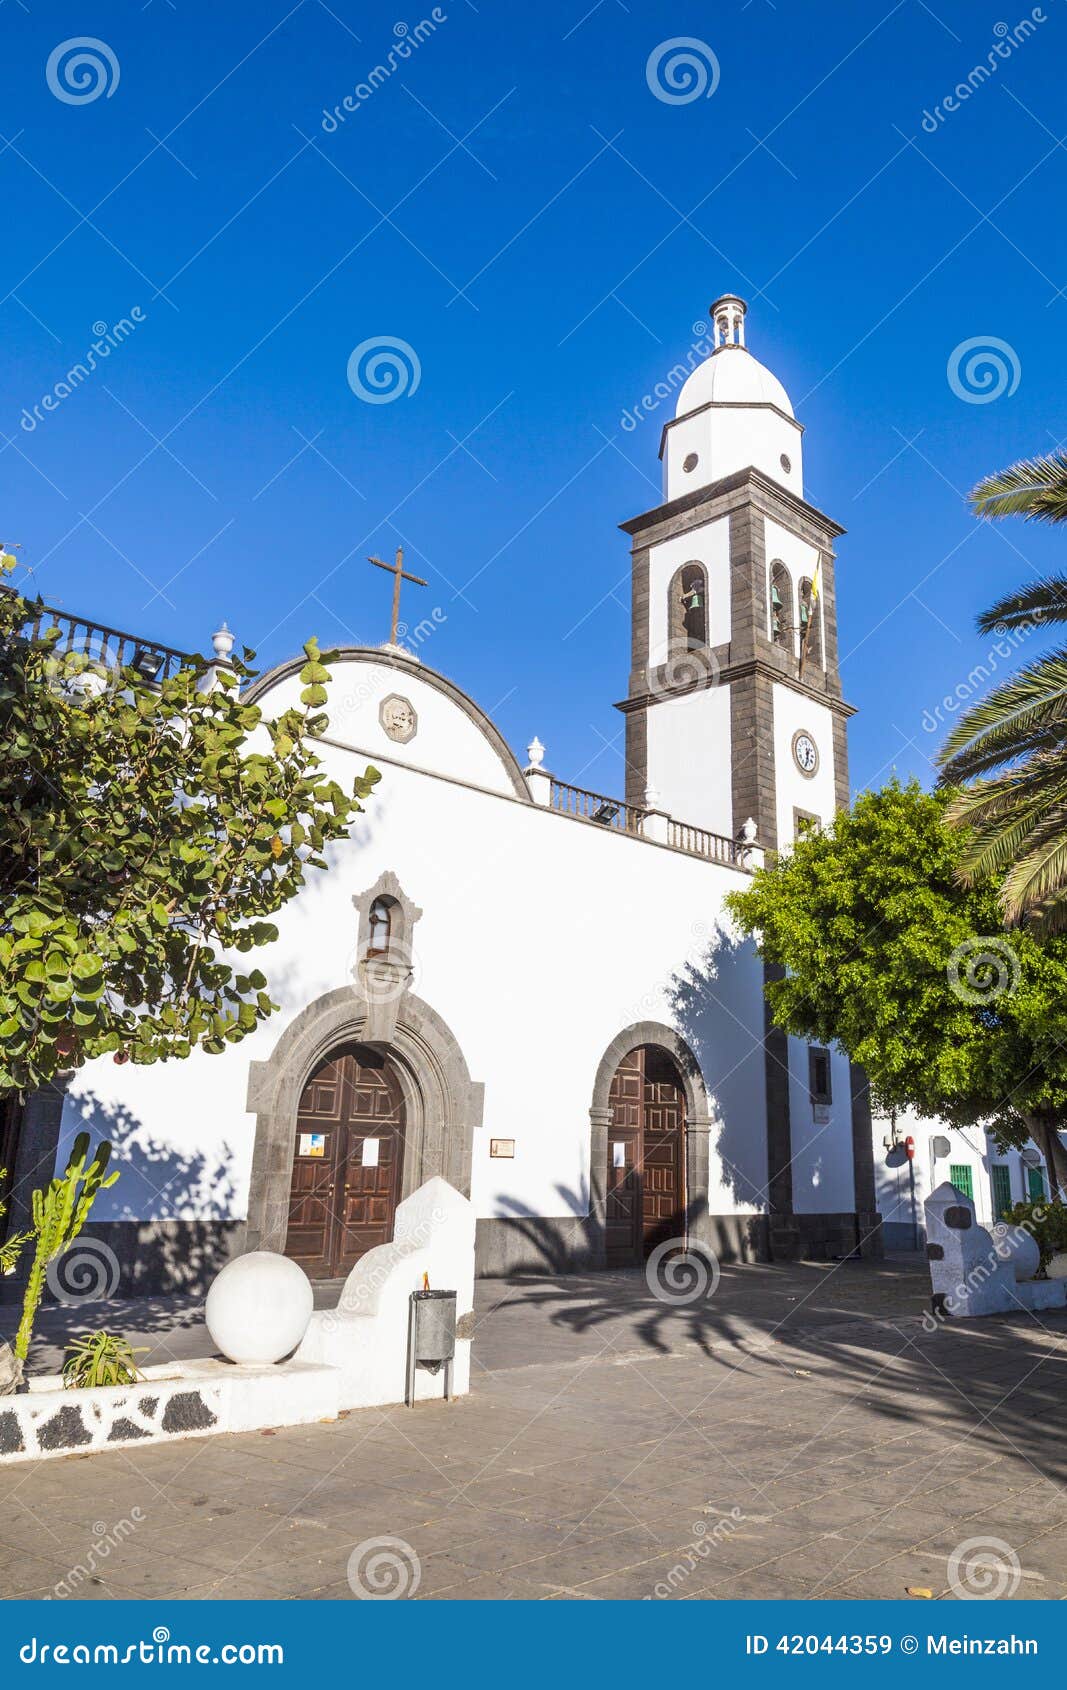 the beautiful church of san ginÃÂ©s in arrecife, lanzarote